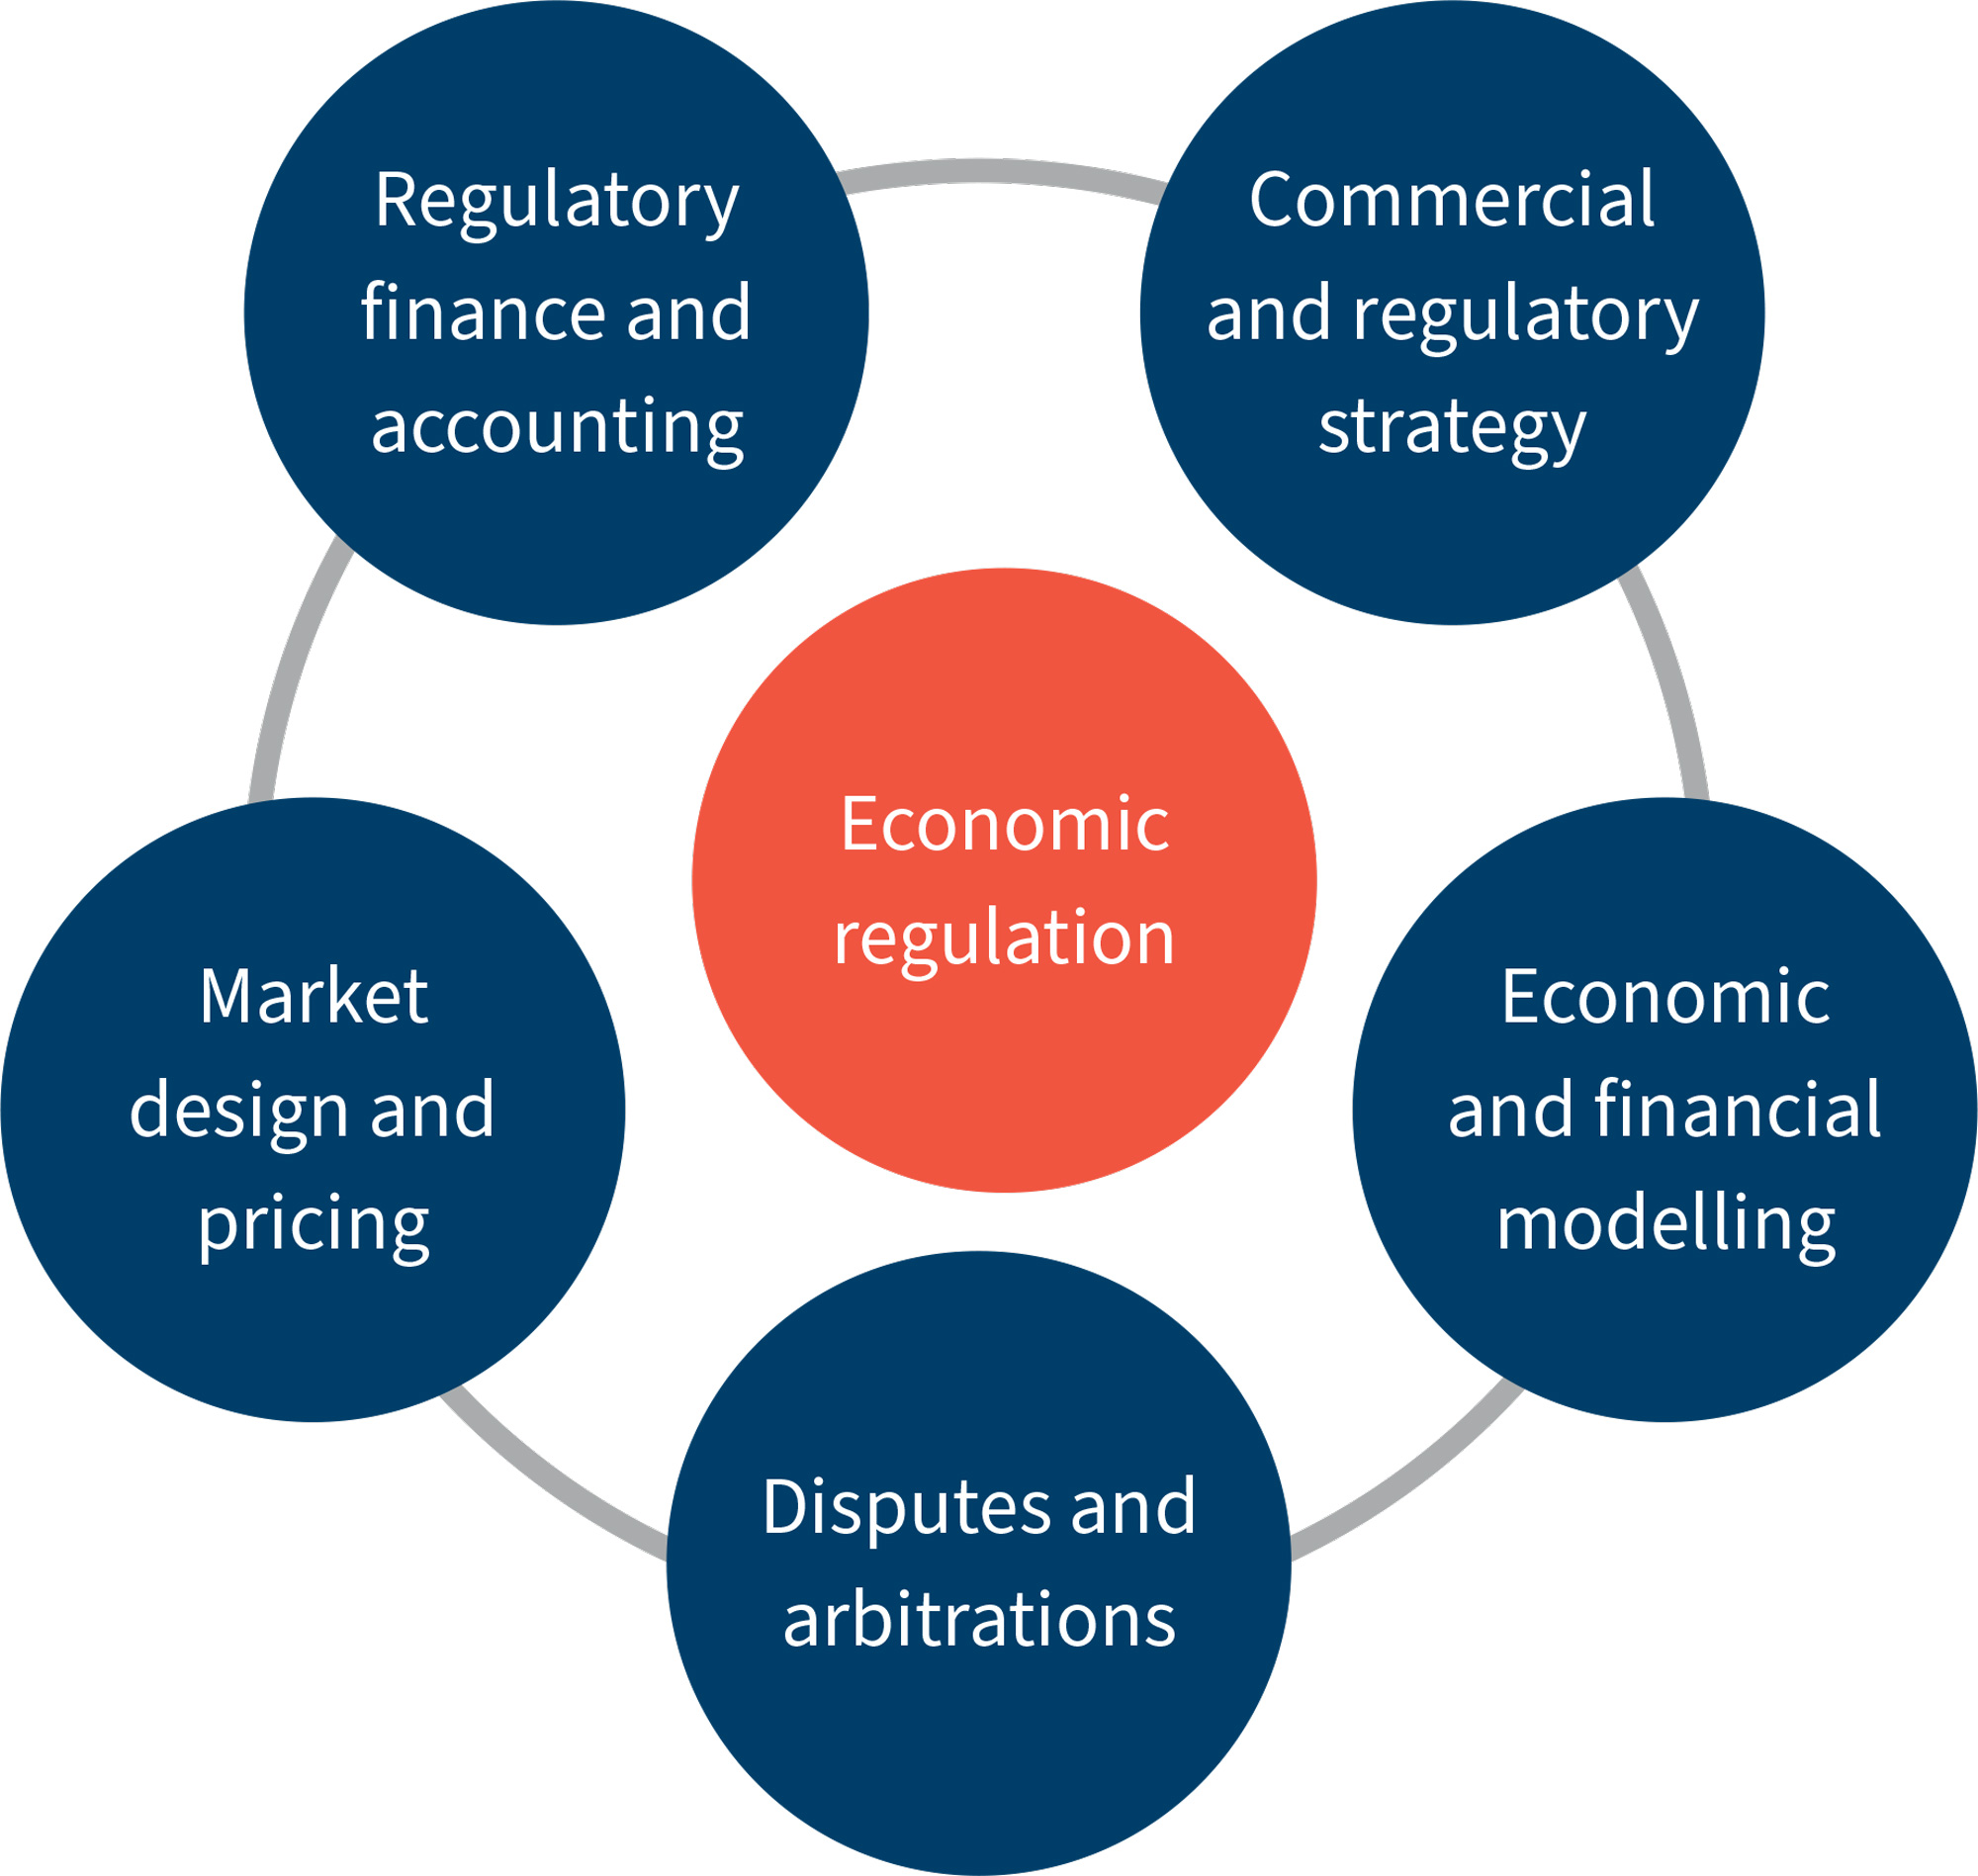 Economic regulation